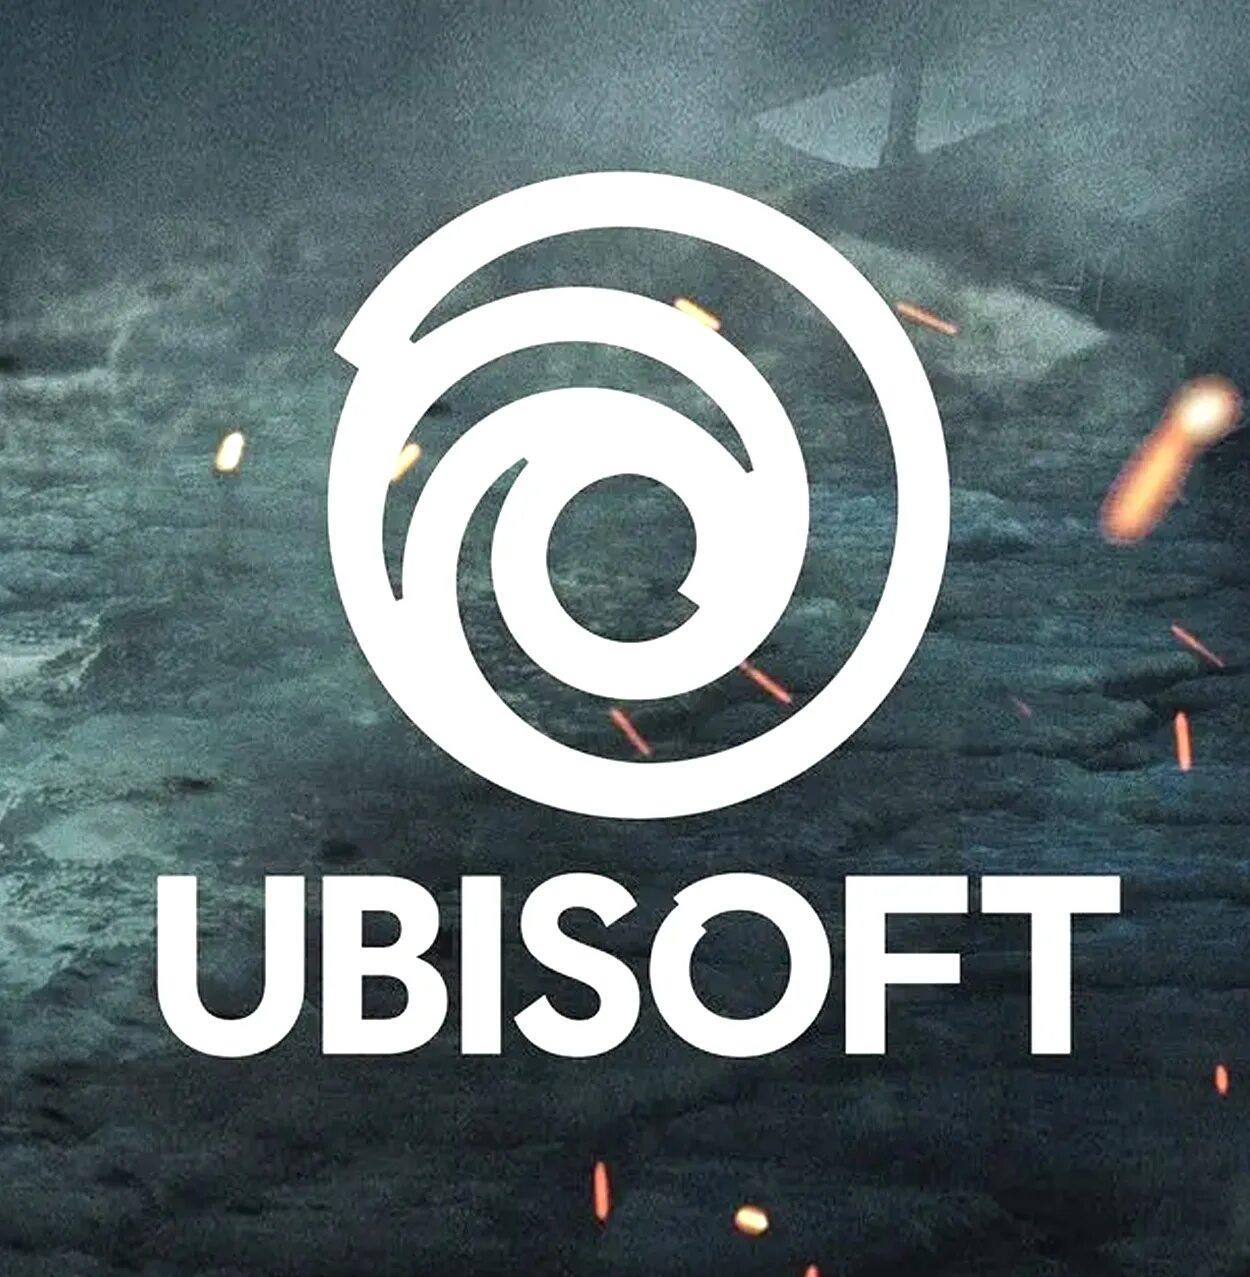 Ubisoft connect beta. Юбисофт. Юбисофт лого. Ubisoft картинки. Ubisoft connect логотип.